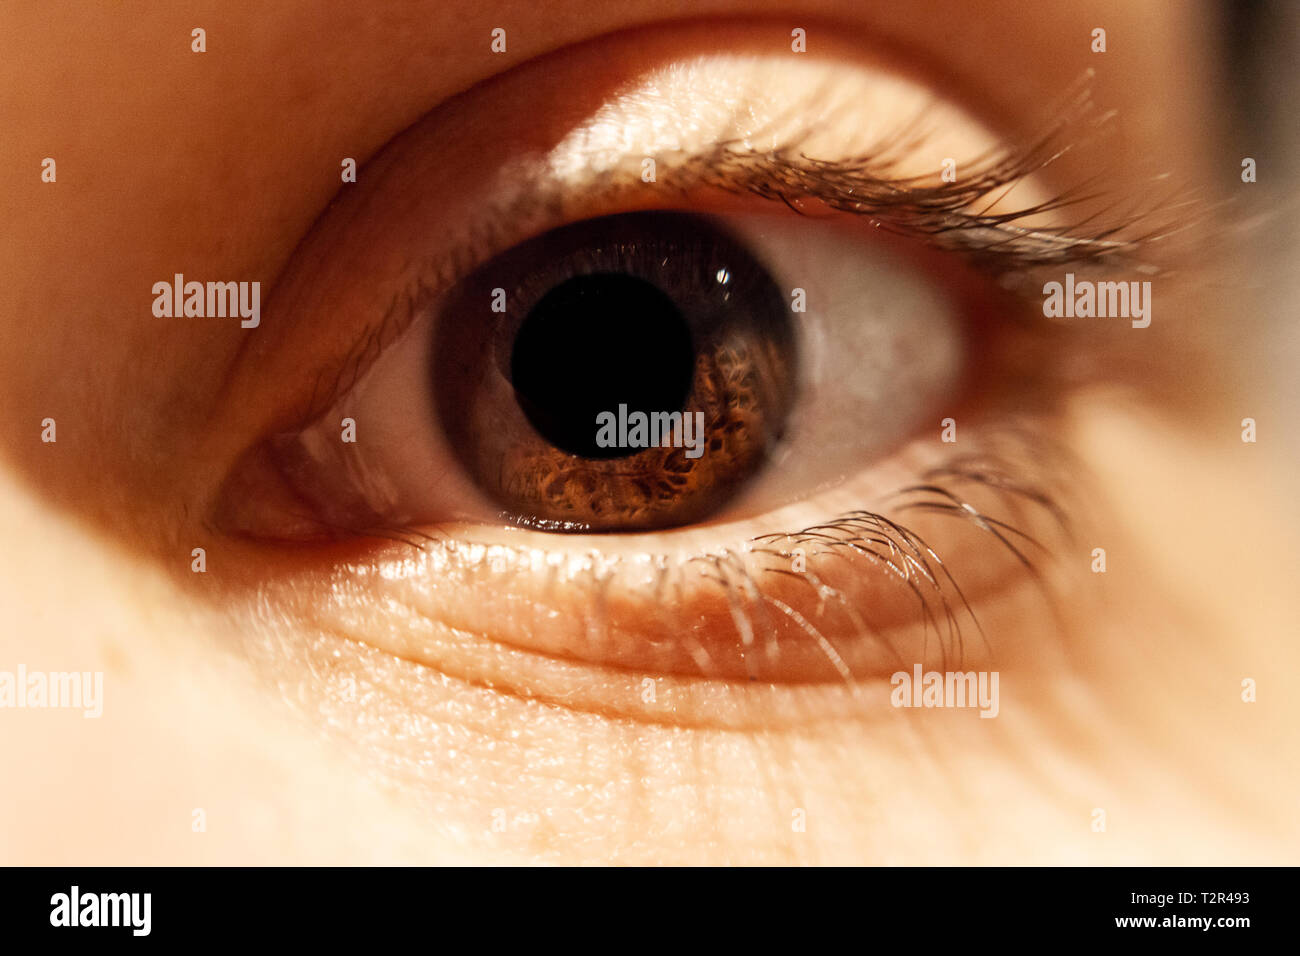 Ojos marrones aislados - ojos humanos - un hermoso ojos marrones - Imagen Foto de stock